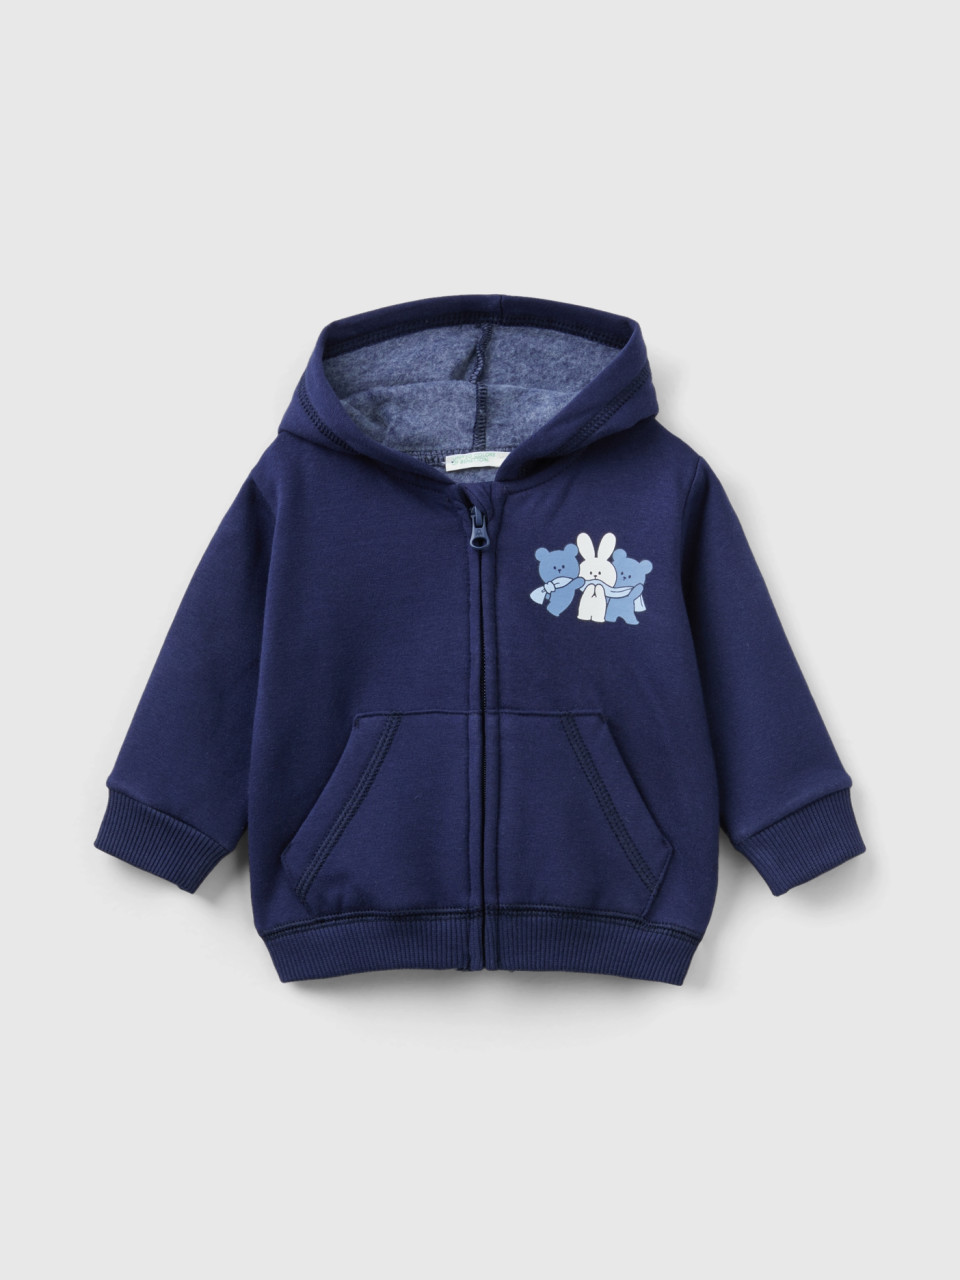 Benetton, Warm Sweatshirt With Animal Print, Dark Blue, Kids